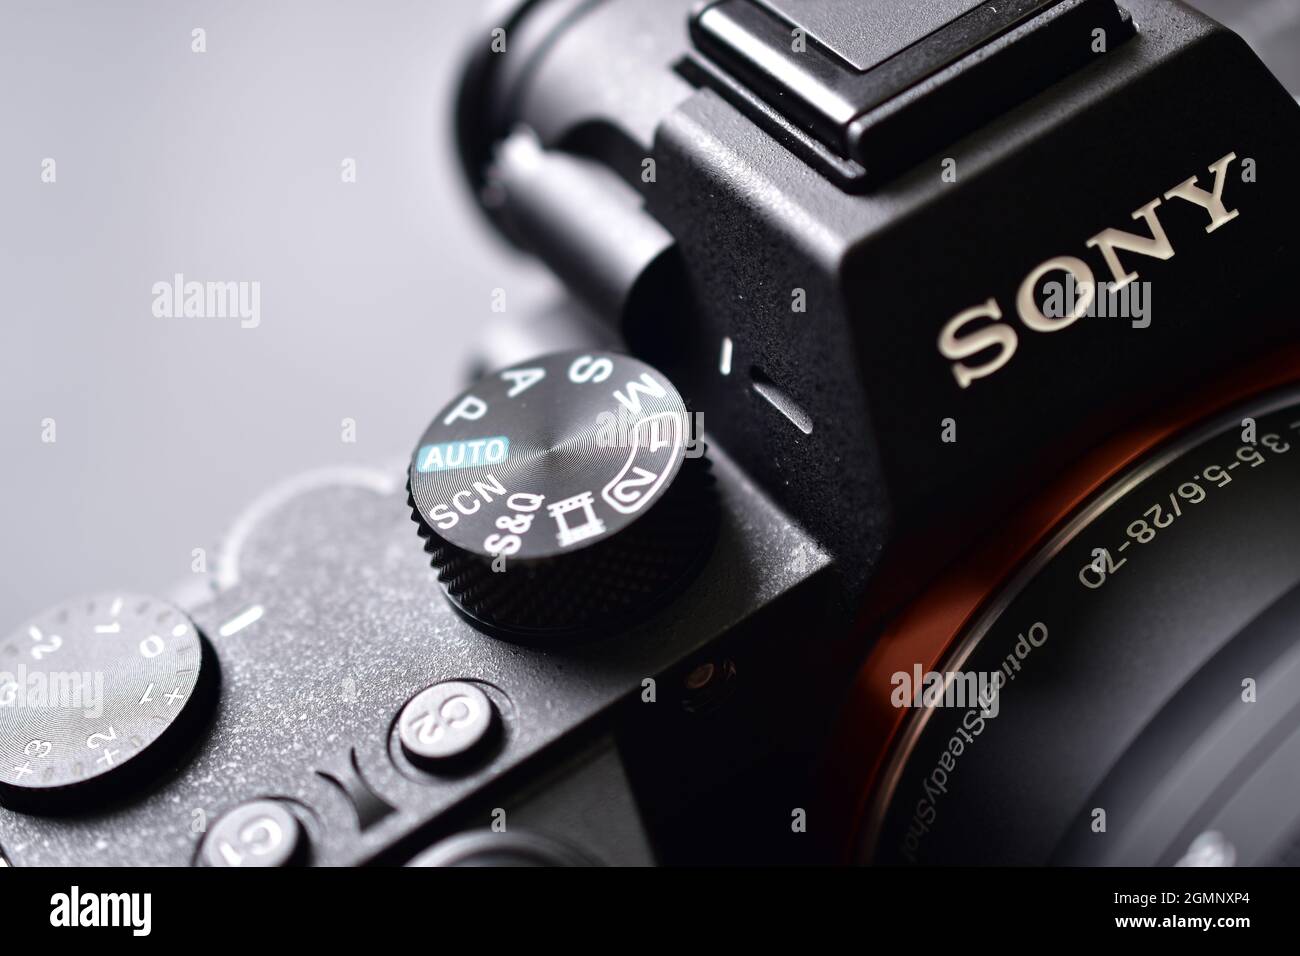 Delhi, india - September 7, 2020: Sony custom dial macro Stock Photo